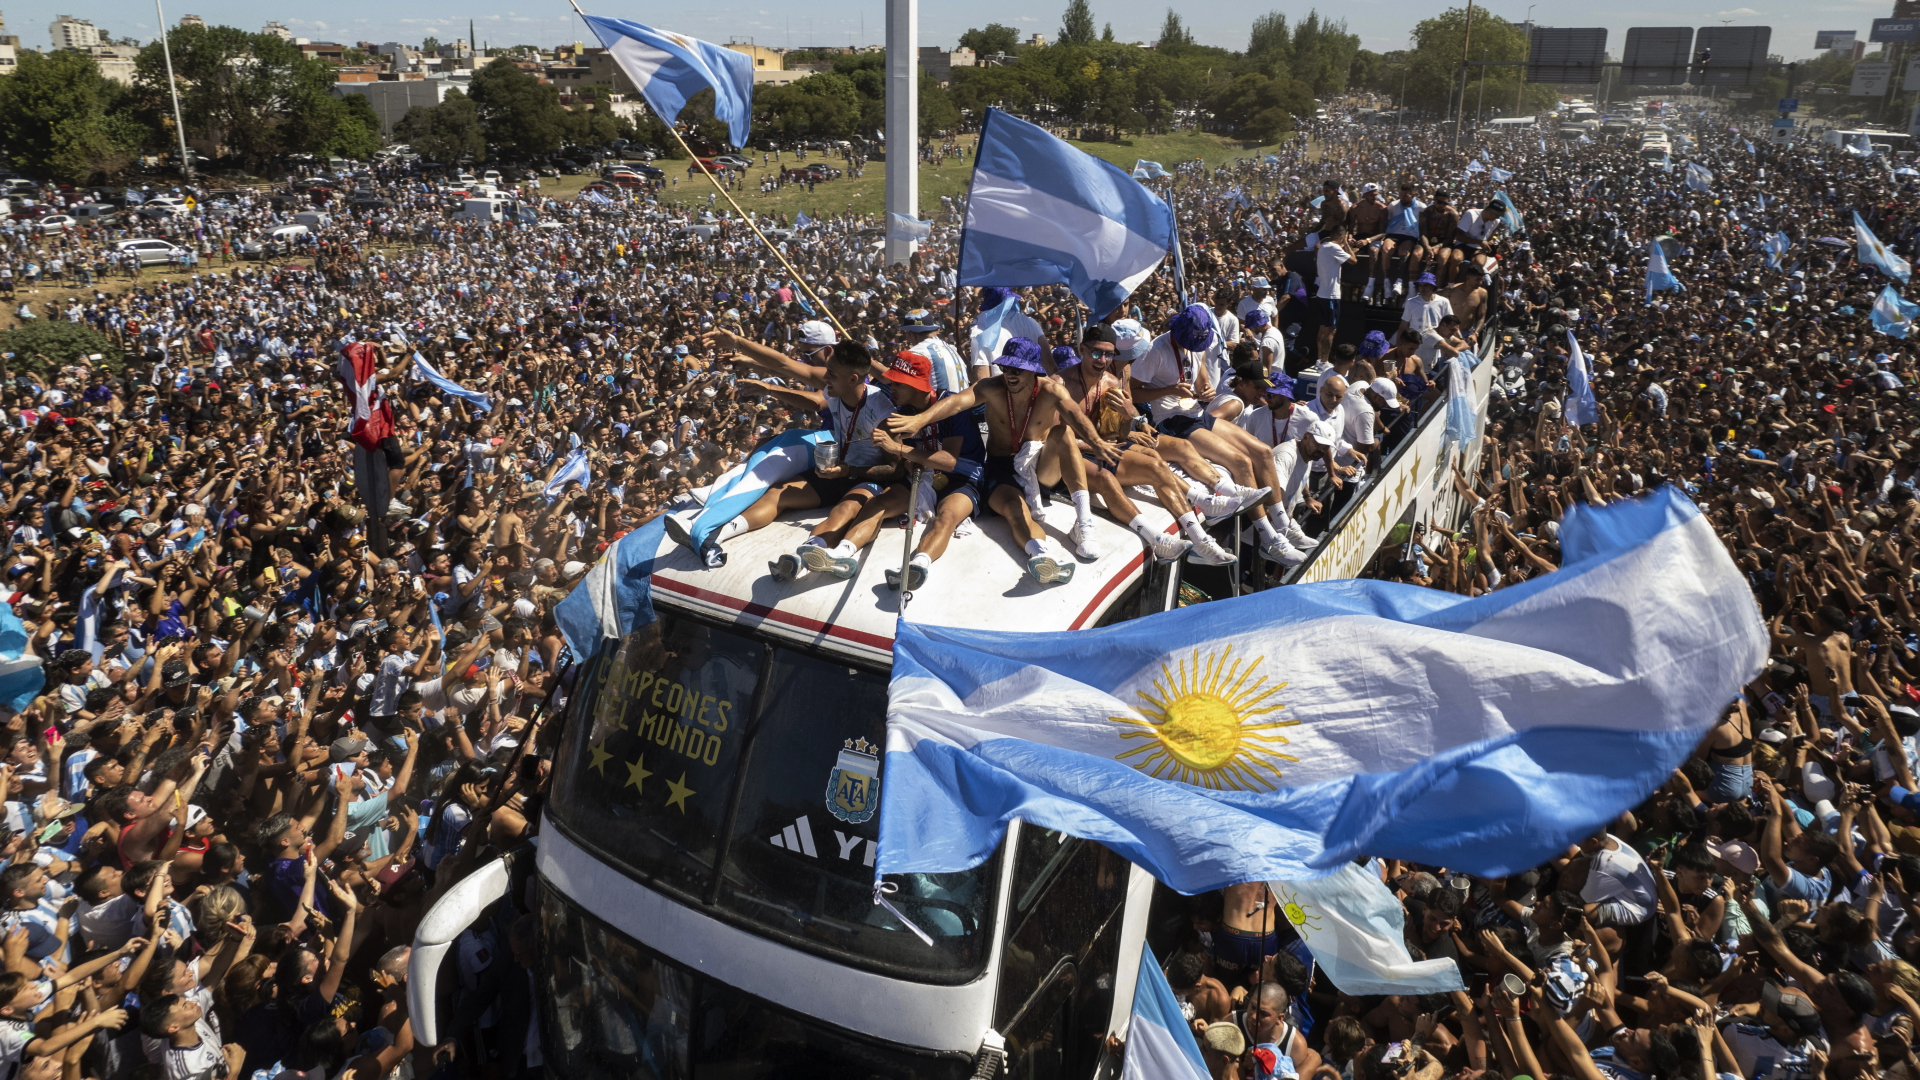 Ein offener Bus mit den argentinischen Fußball-Weltmeistern fährt in Buenos Aires durch Menschenmassen. | dpa